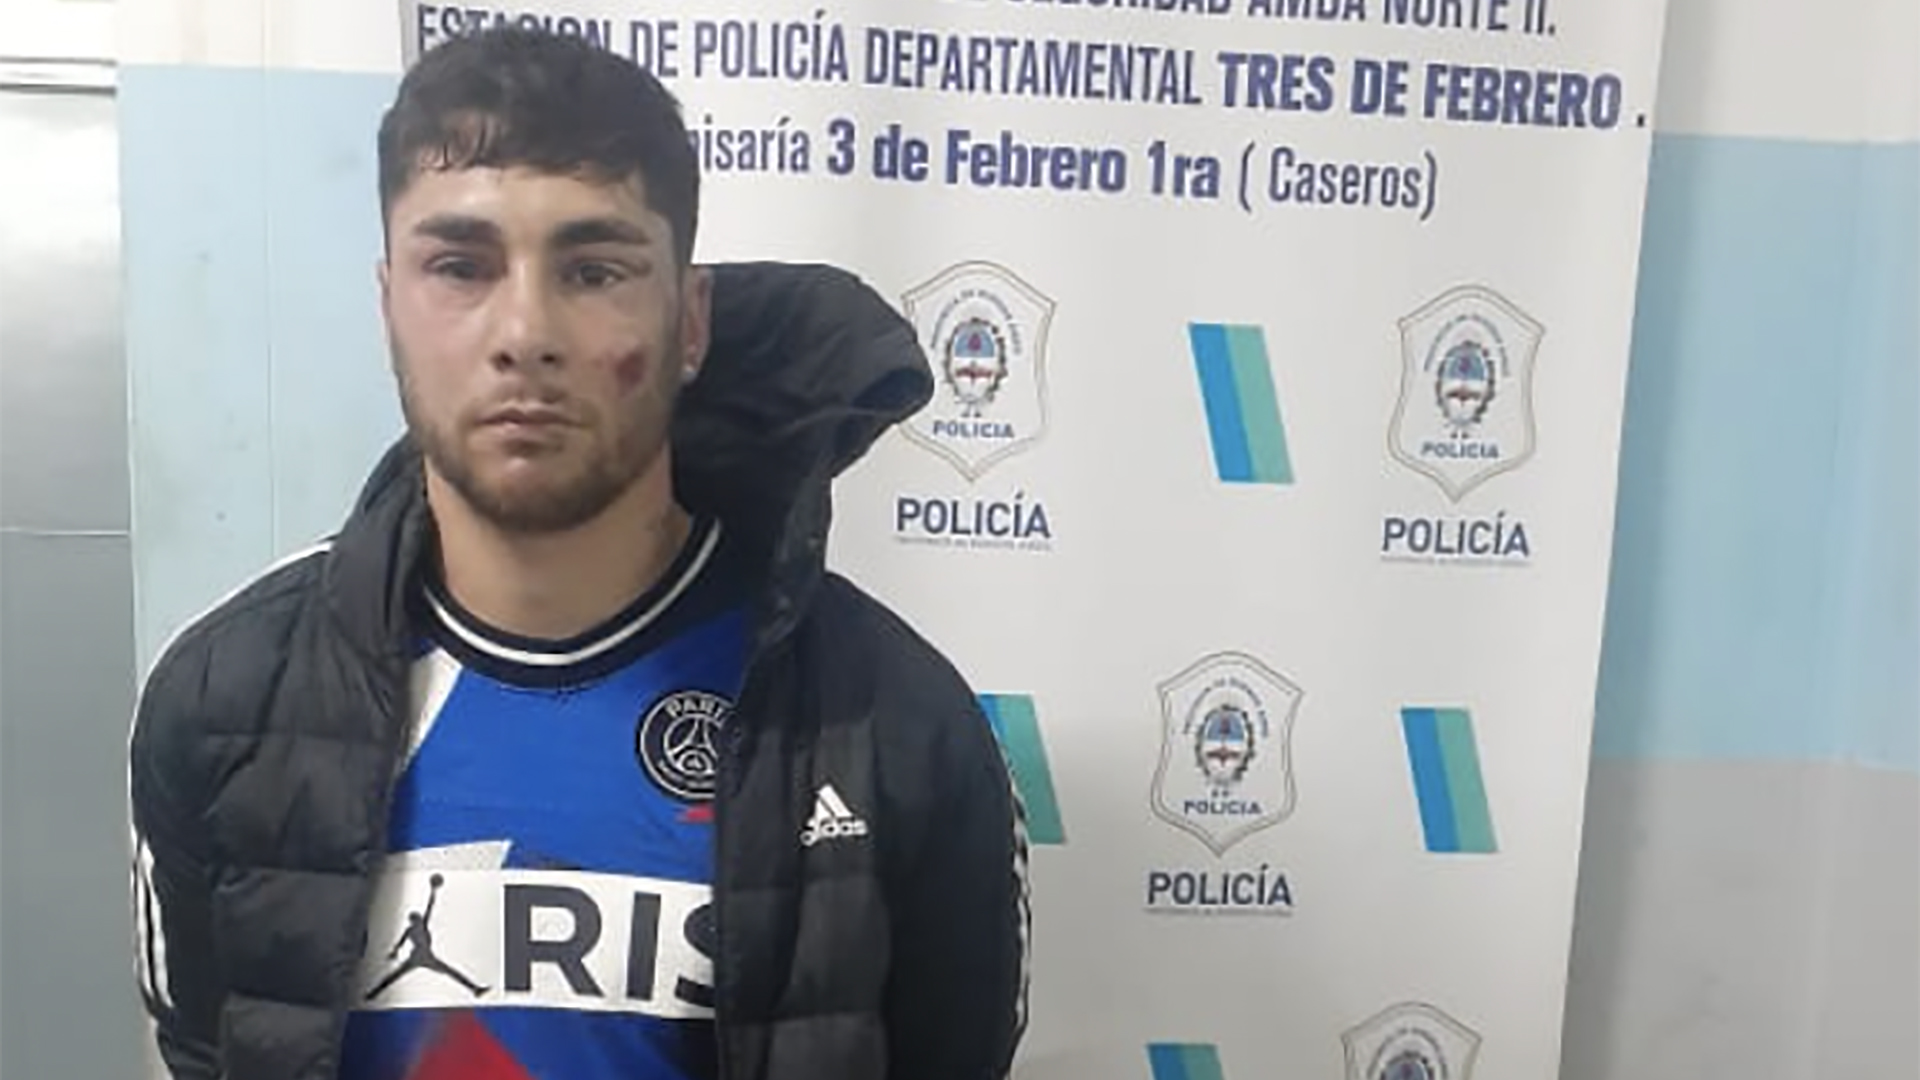 El ex River Ezequiel Cirigliano se negó a declarar y alegó que padece esquizofrenia: el arma pertenece a la Policía Federal  